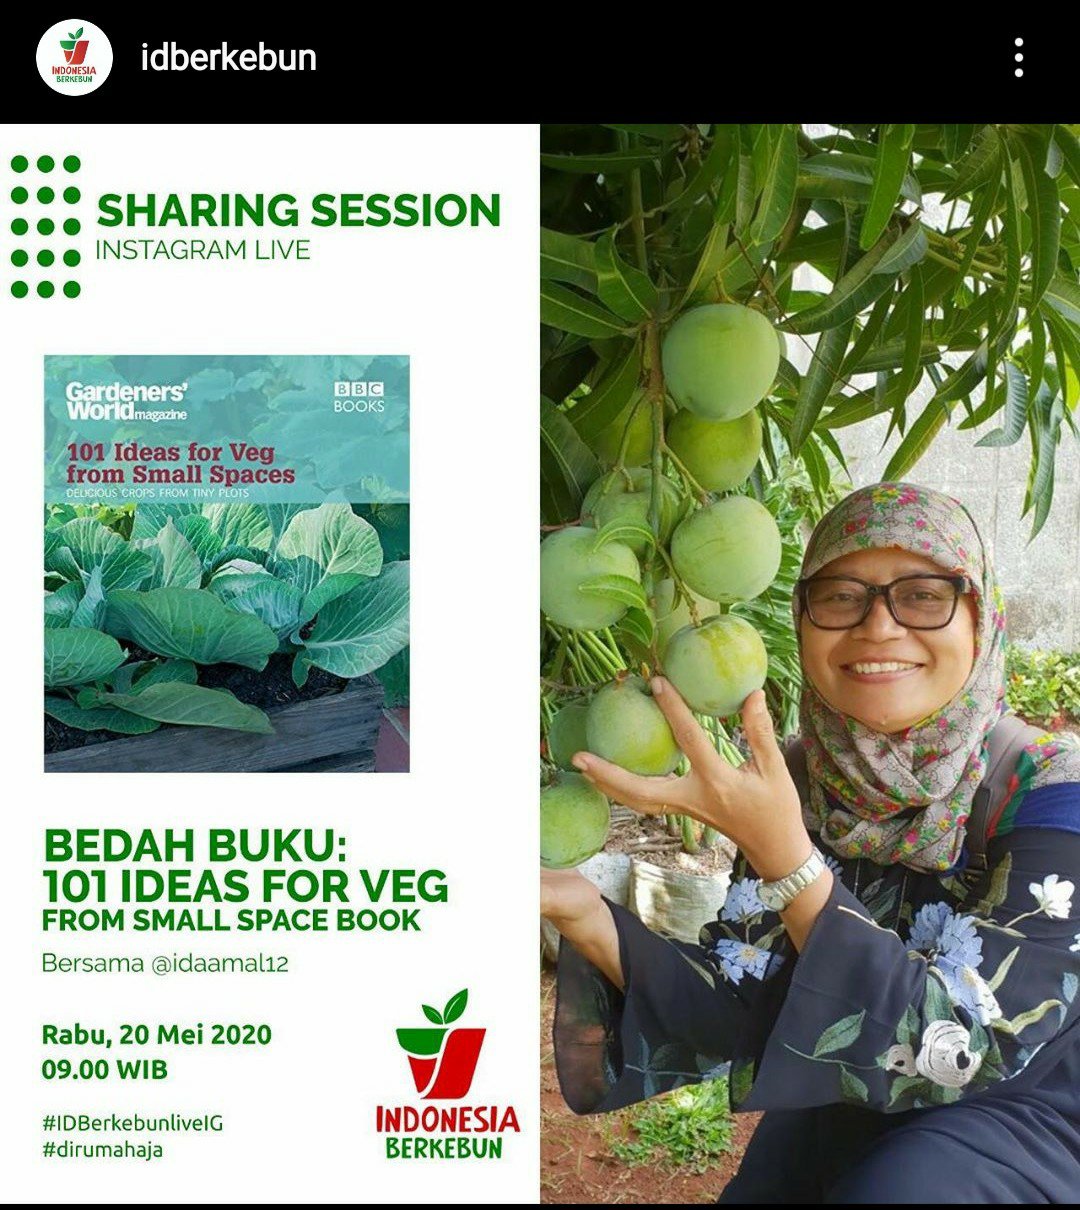 Bedah Buku “101 Ideas for Veg from Small Spaces”; Optimalkan Lahan Sempit Menjadi Kebun Produktif